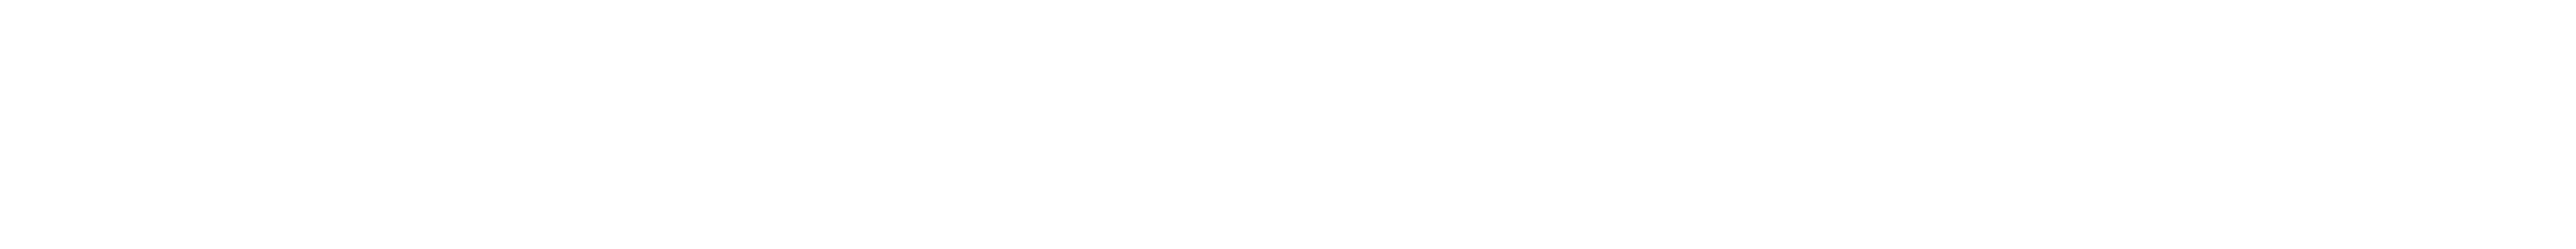 Marty’s Waffles logos